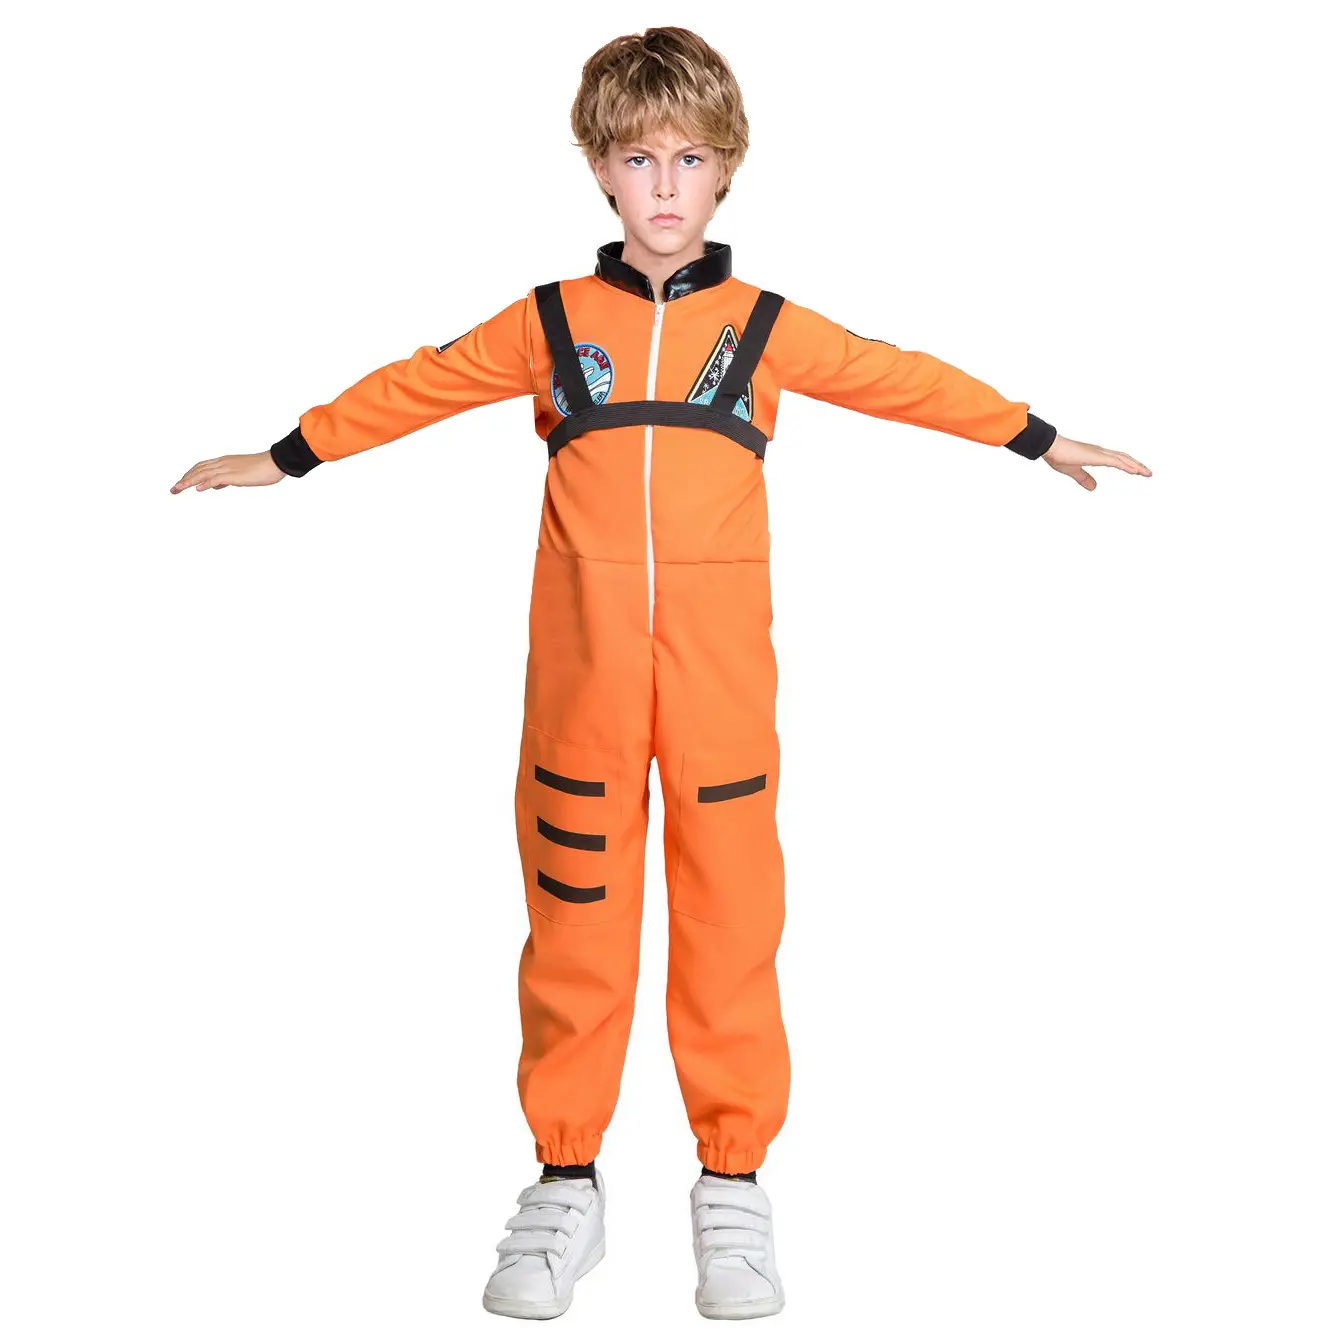 BAIGE Halloween Cosplay Air Costumes Crianças Meninos Companhia Aérea Capitão Carreira Dress Up Crianças Traje Piloto